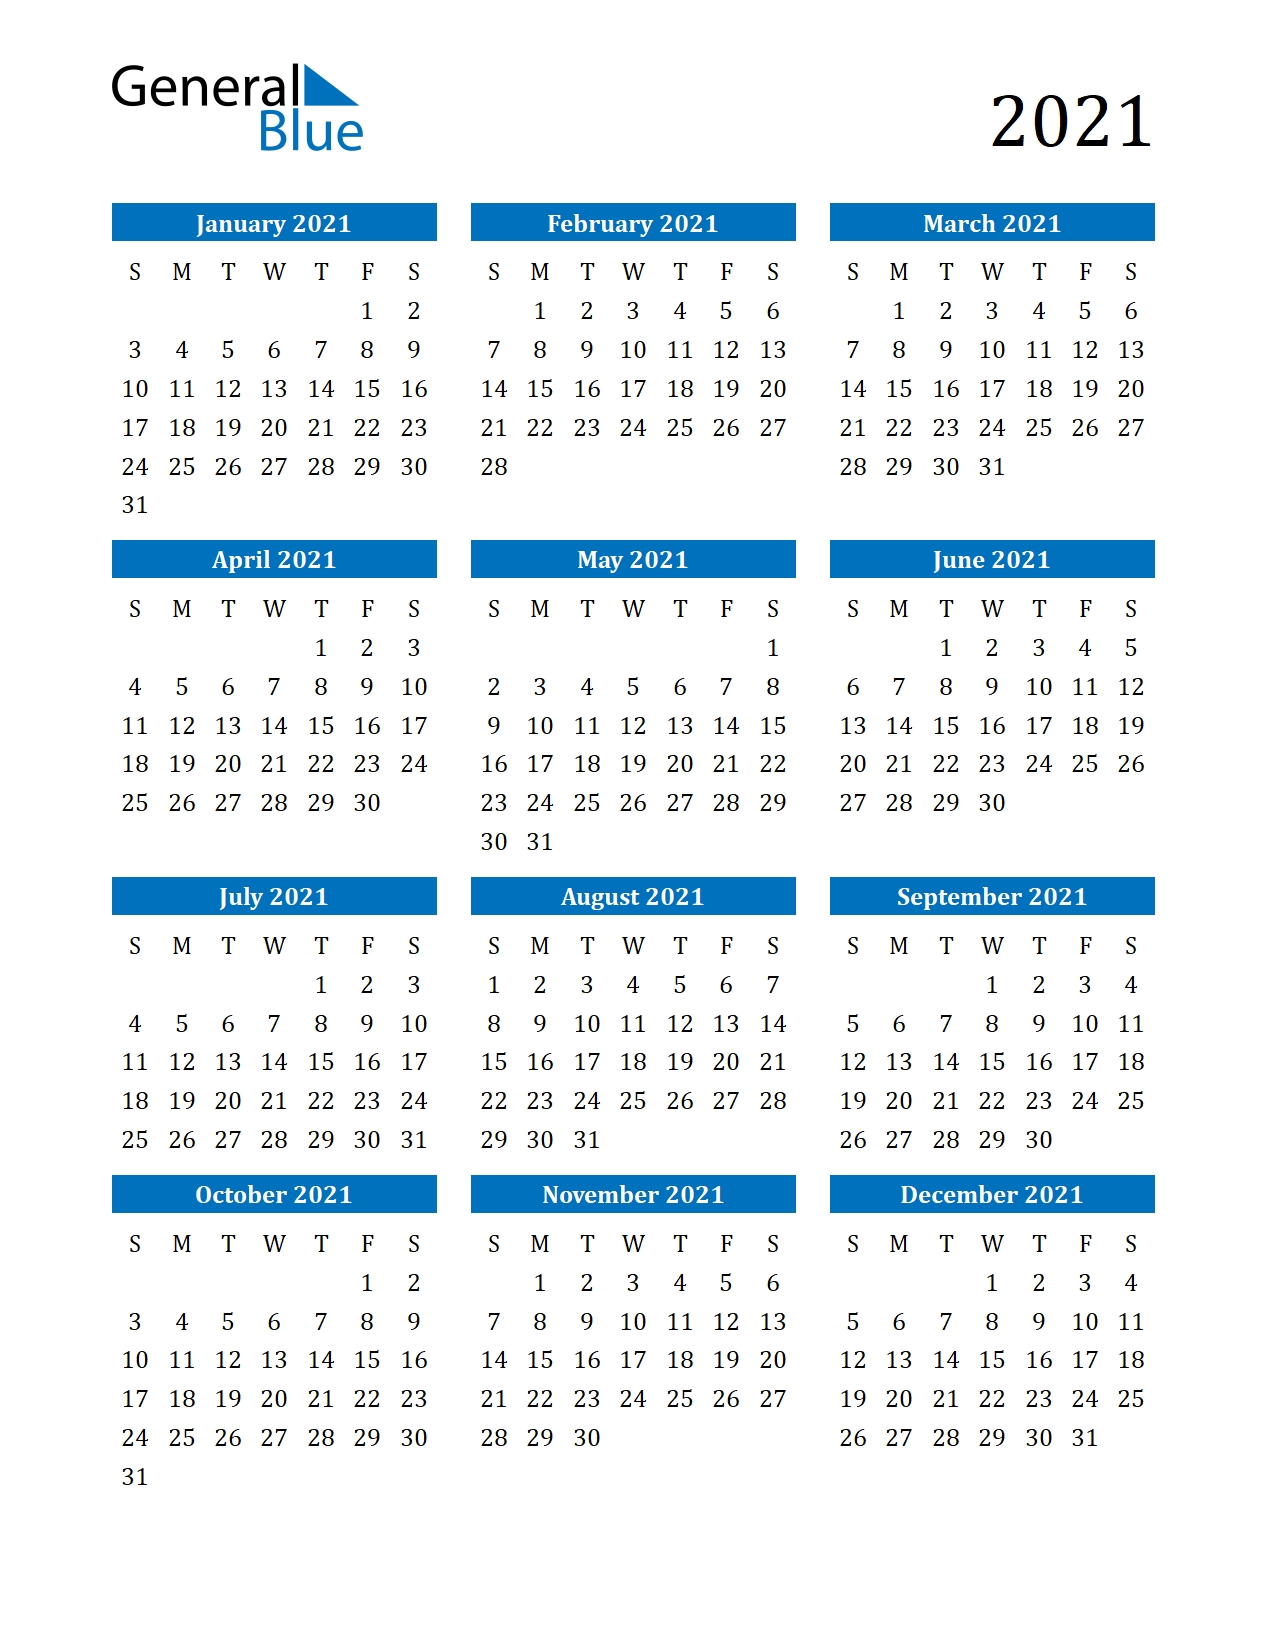 Take Work Week Calendar 2021